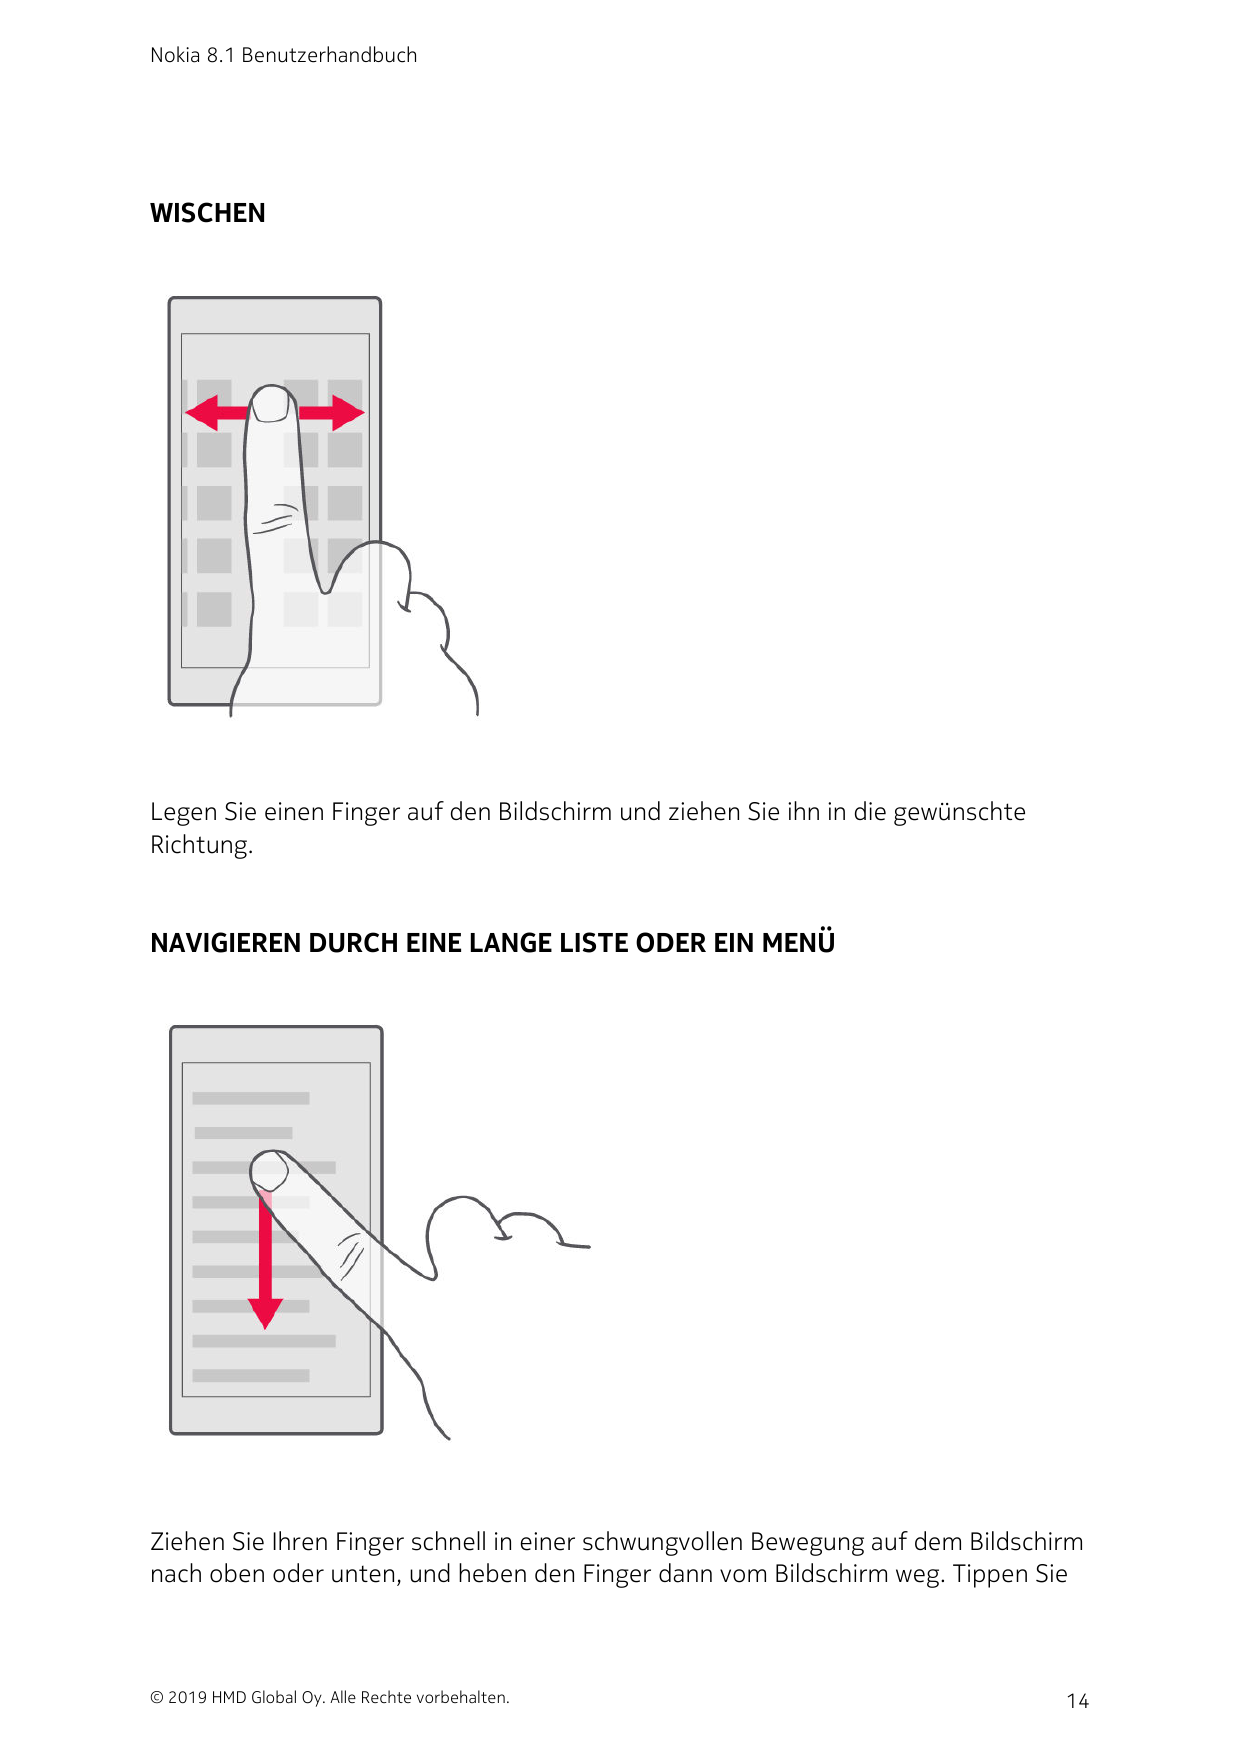 Nokia 8.1 BenutzerhandbuchWISCHENLegen Sie einen Finger auf den Bildschirm und ziehen Sie ihn in die gewünschteRichtung.NAVIGIER